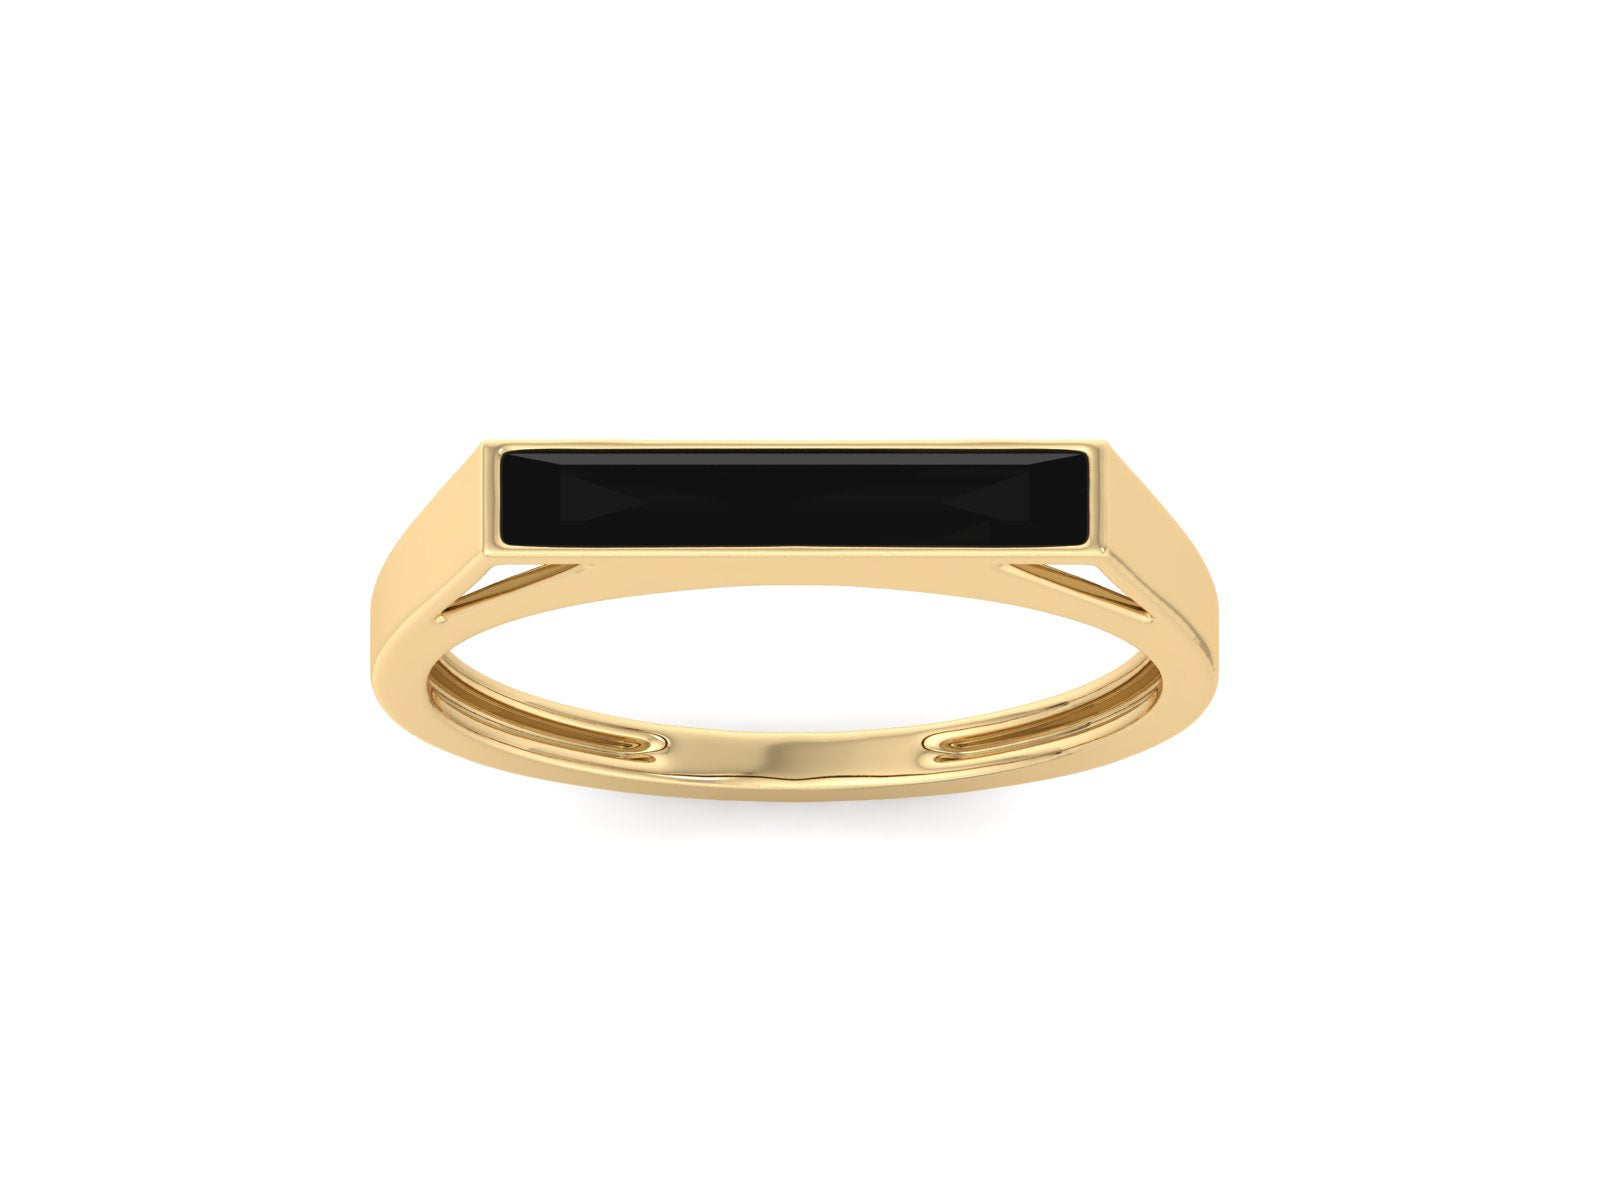 Dainty Gold Ring, Rectangular Black Onyx Ring For Women